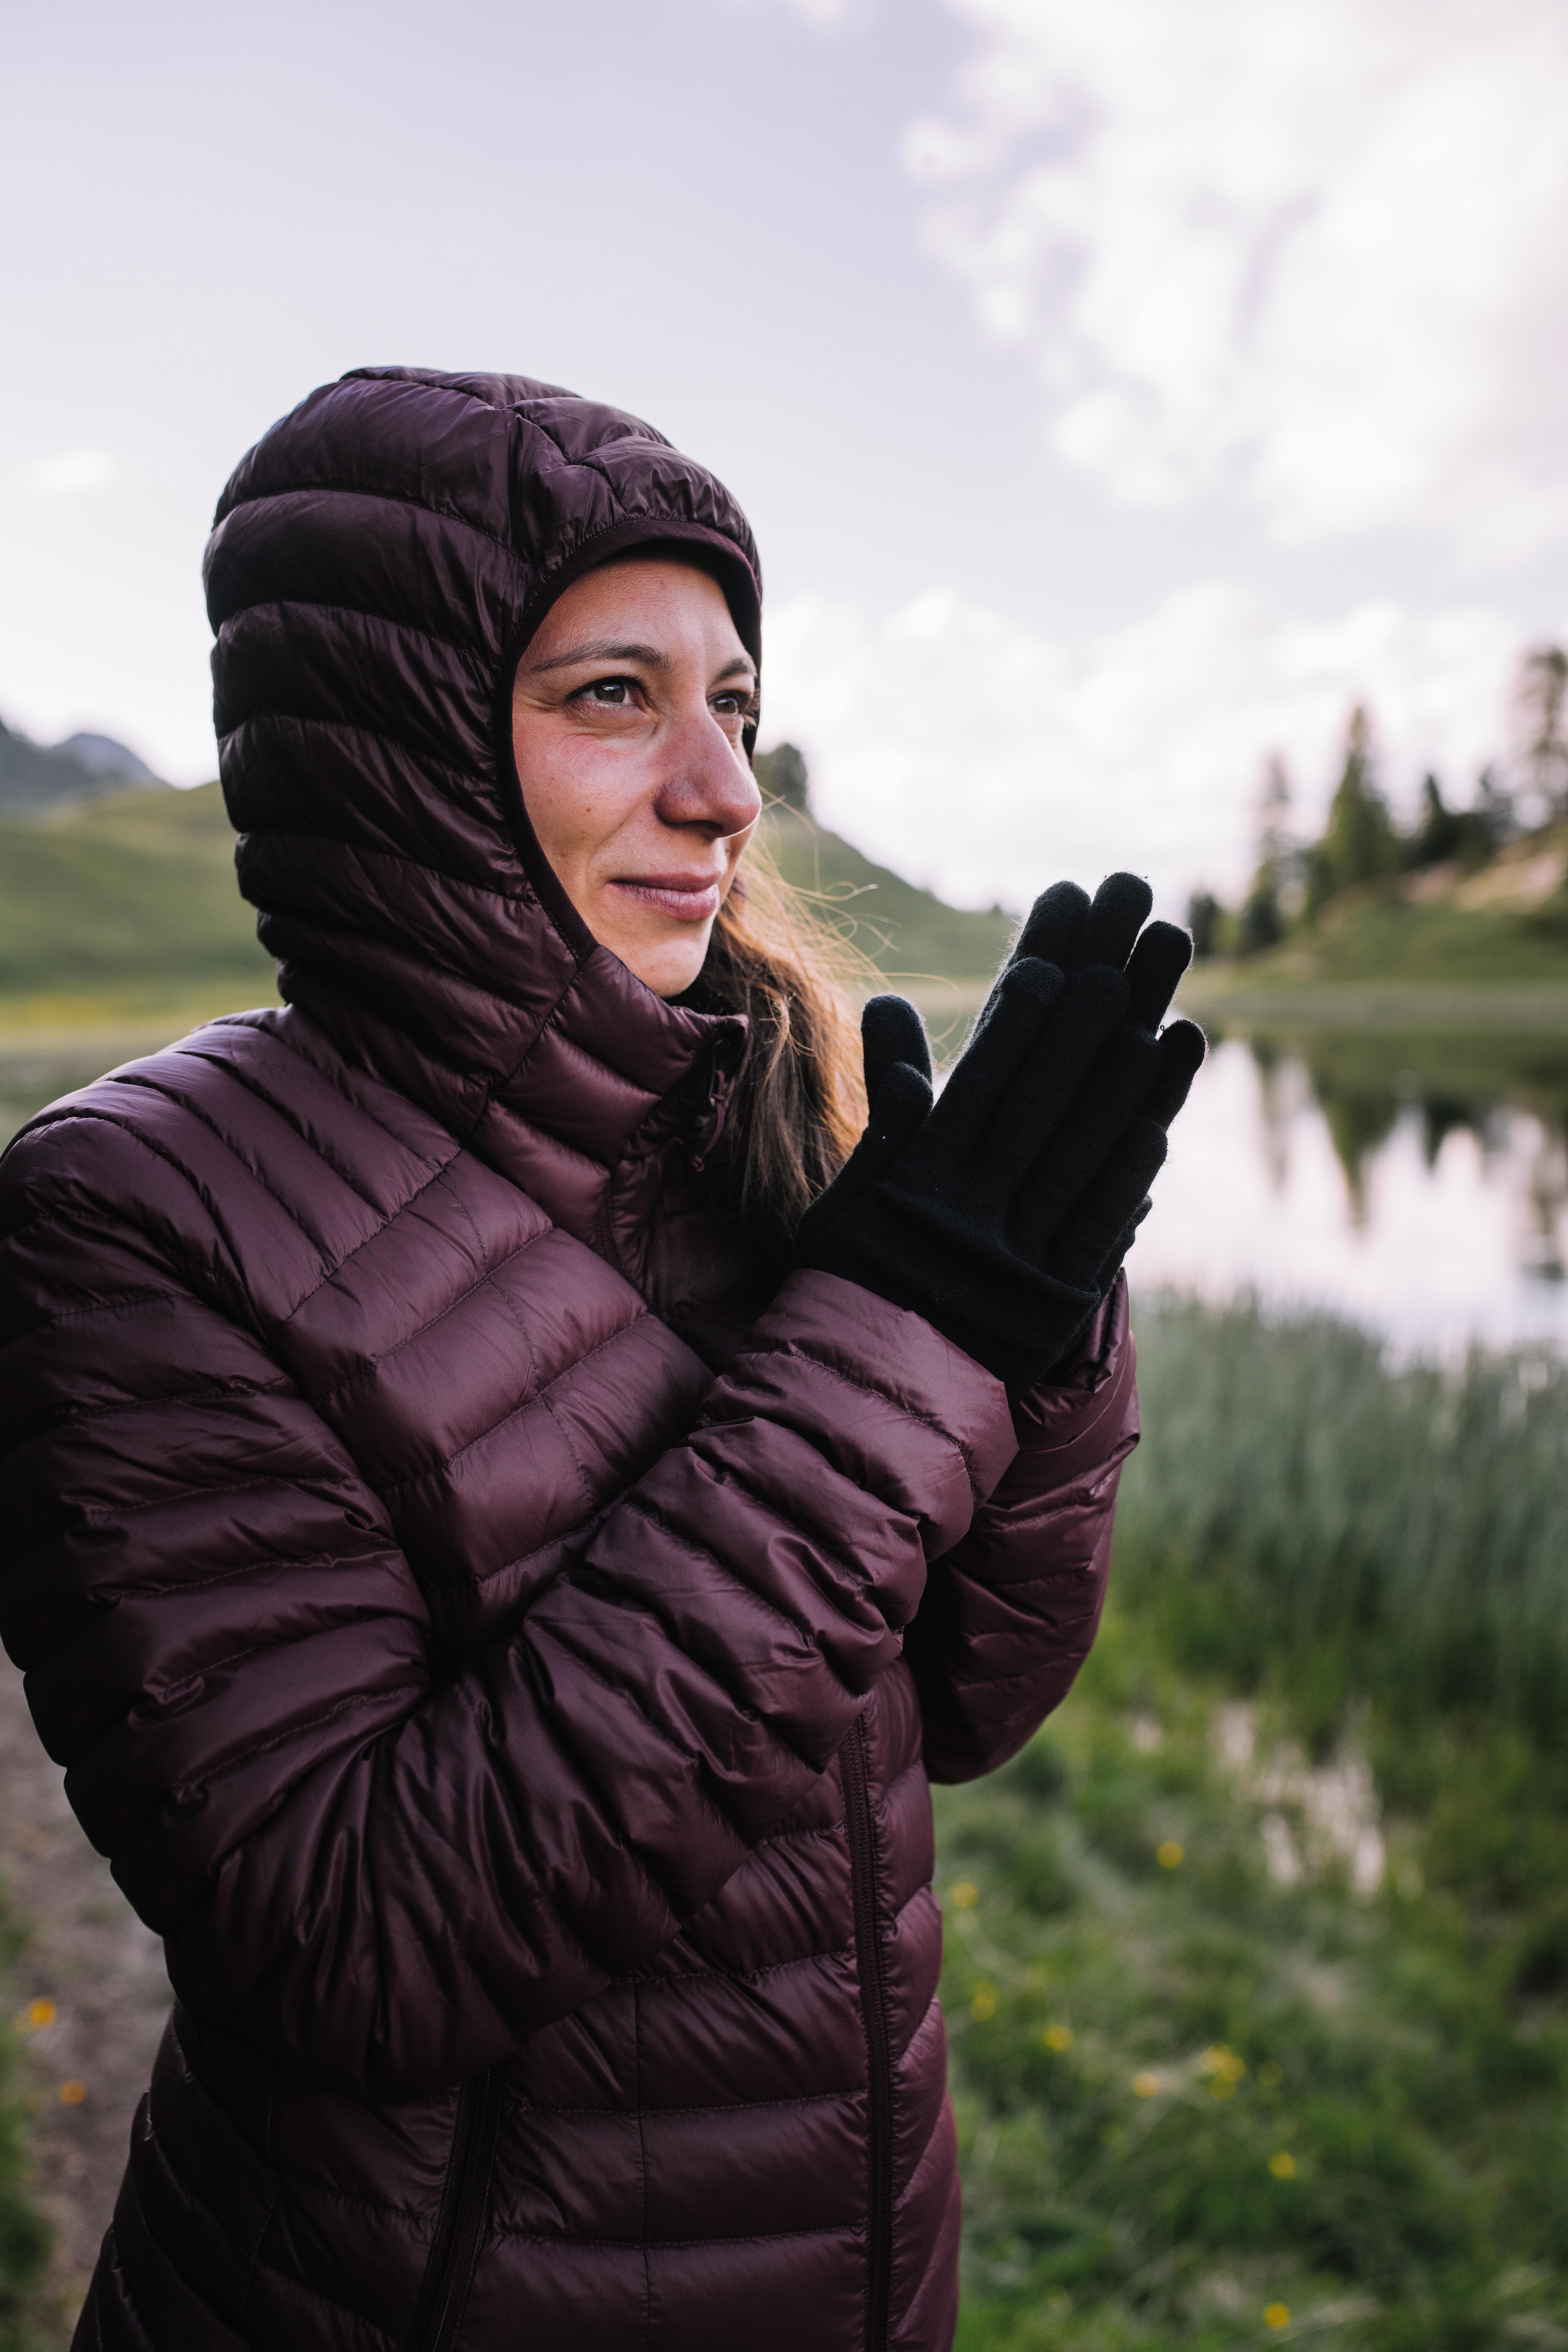 Manteau d'hiver de duvet femme – MT 100 rouge - FORCLAZ